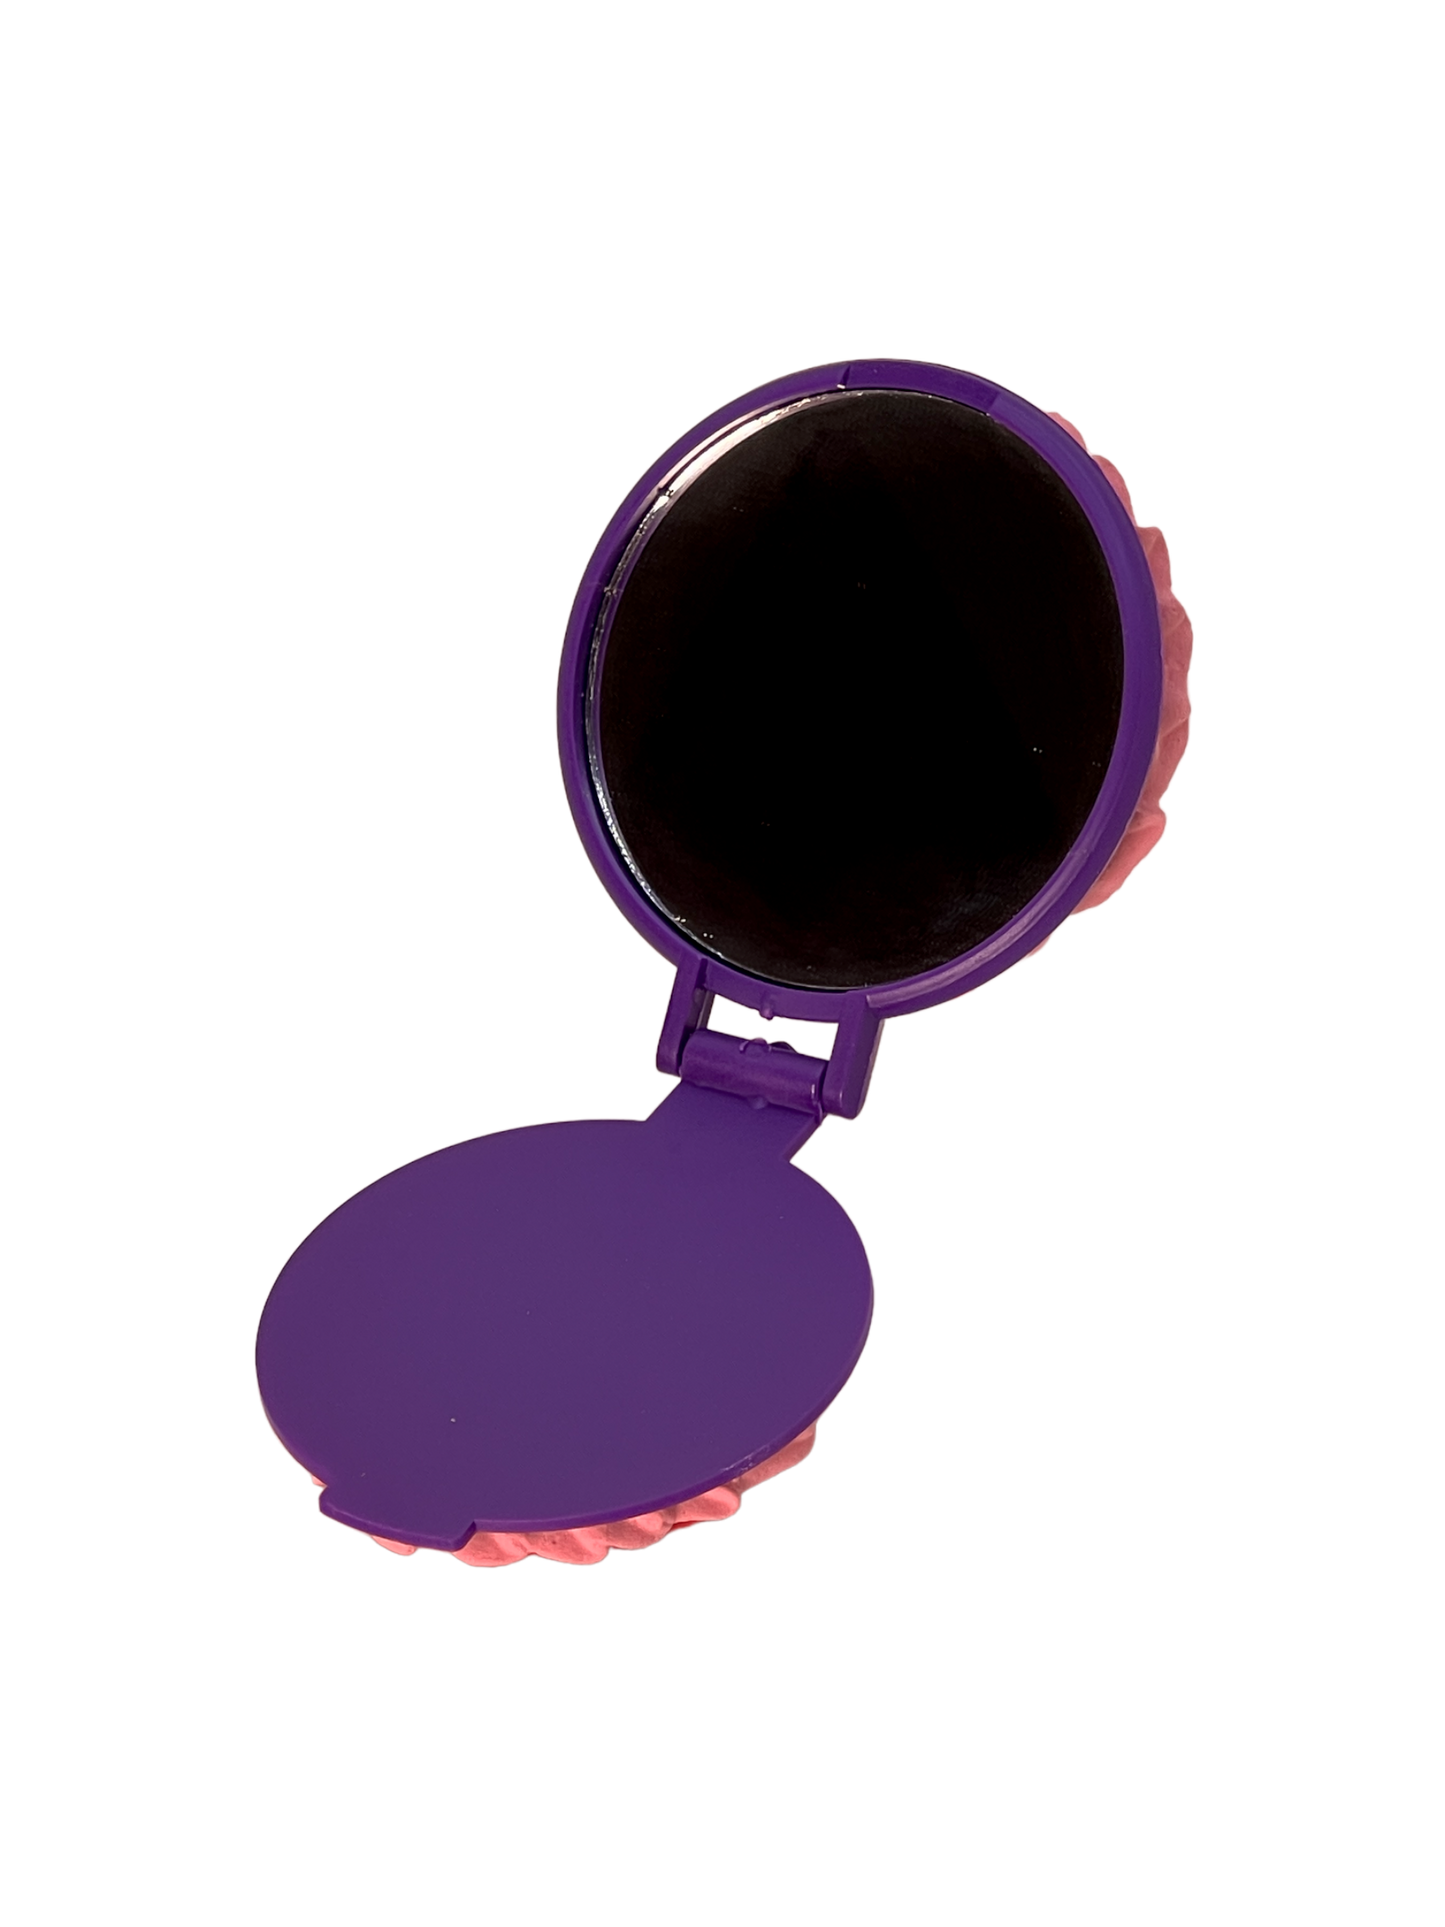 Cherry pie compact mirror dark purple